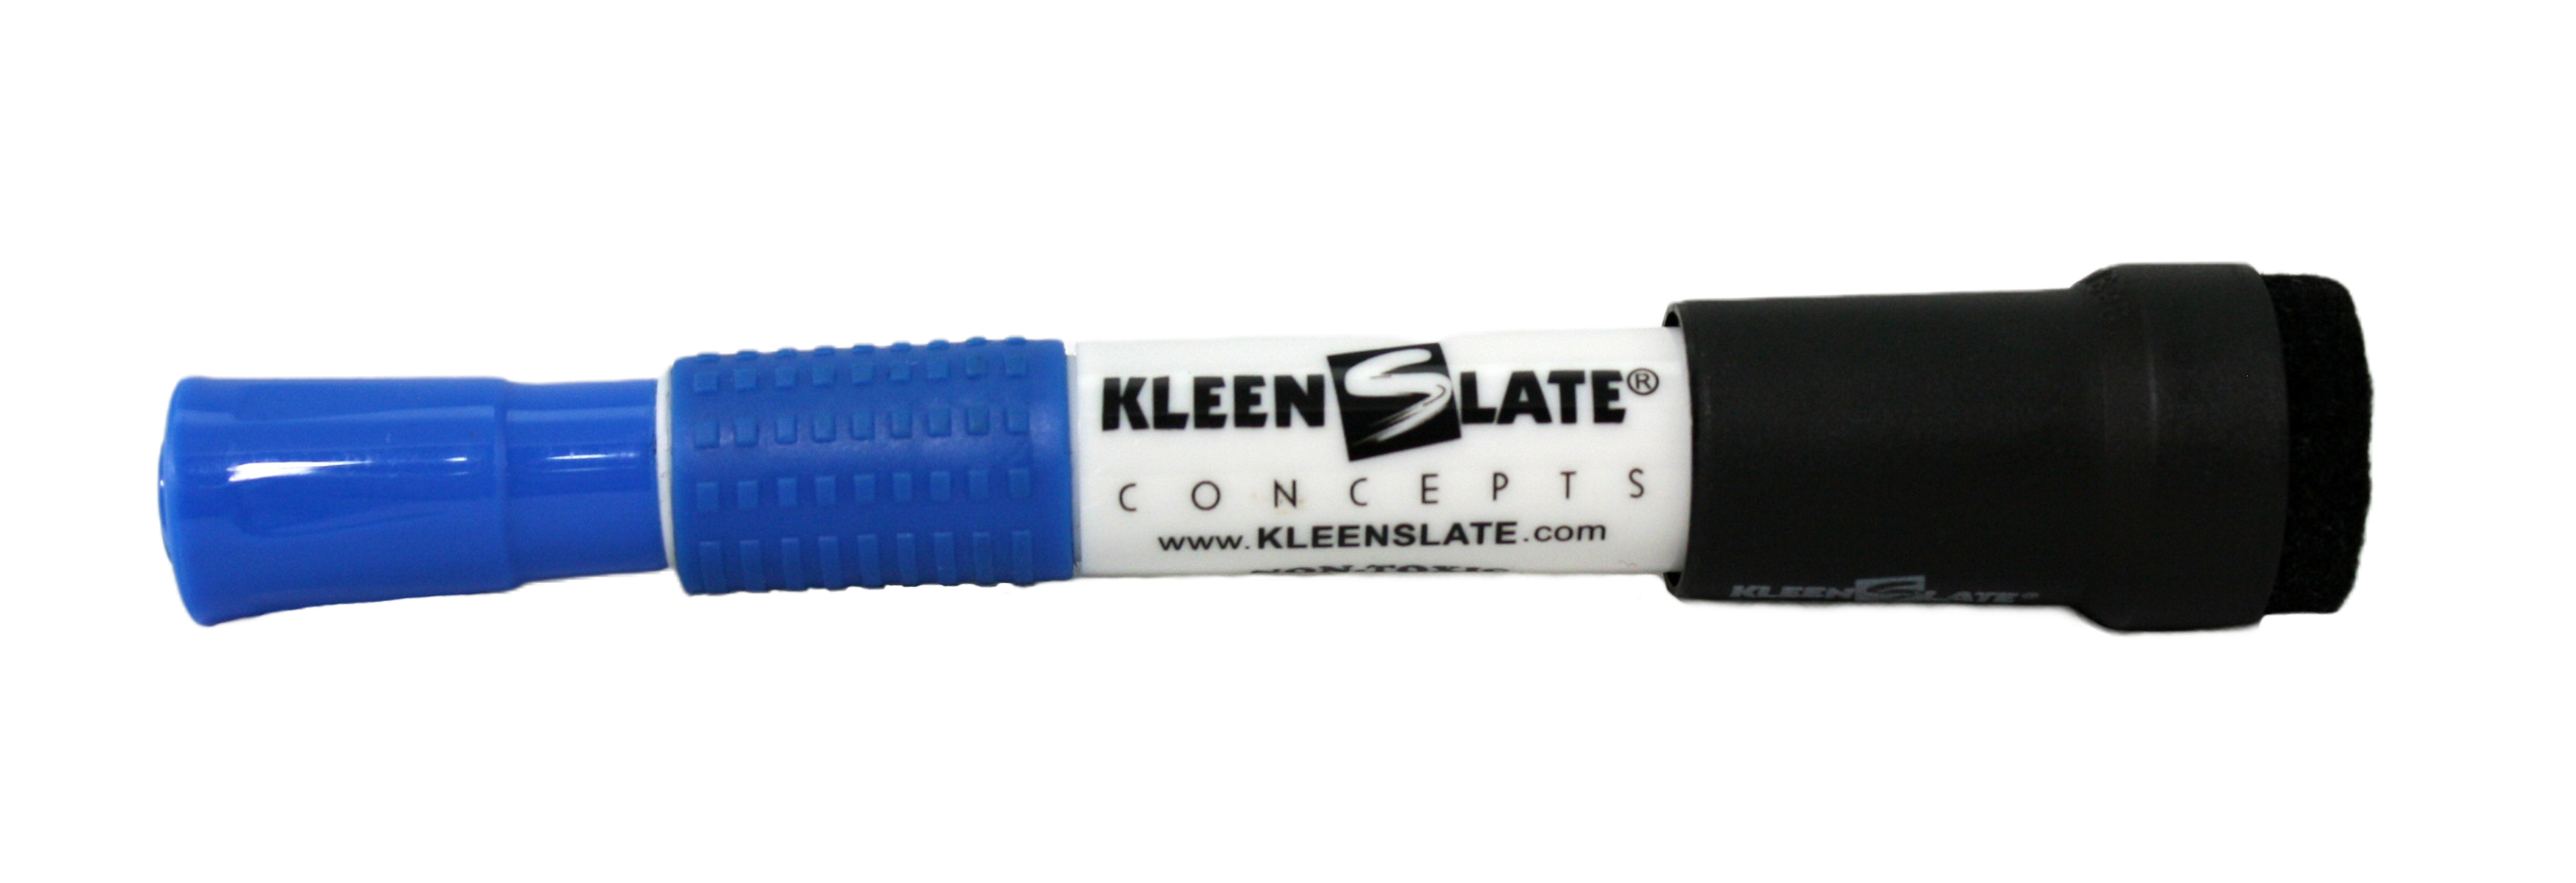 A black KleenSlate Eraser on the end of a blue KleenSlate pen